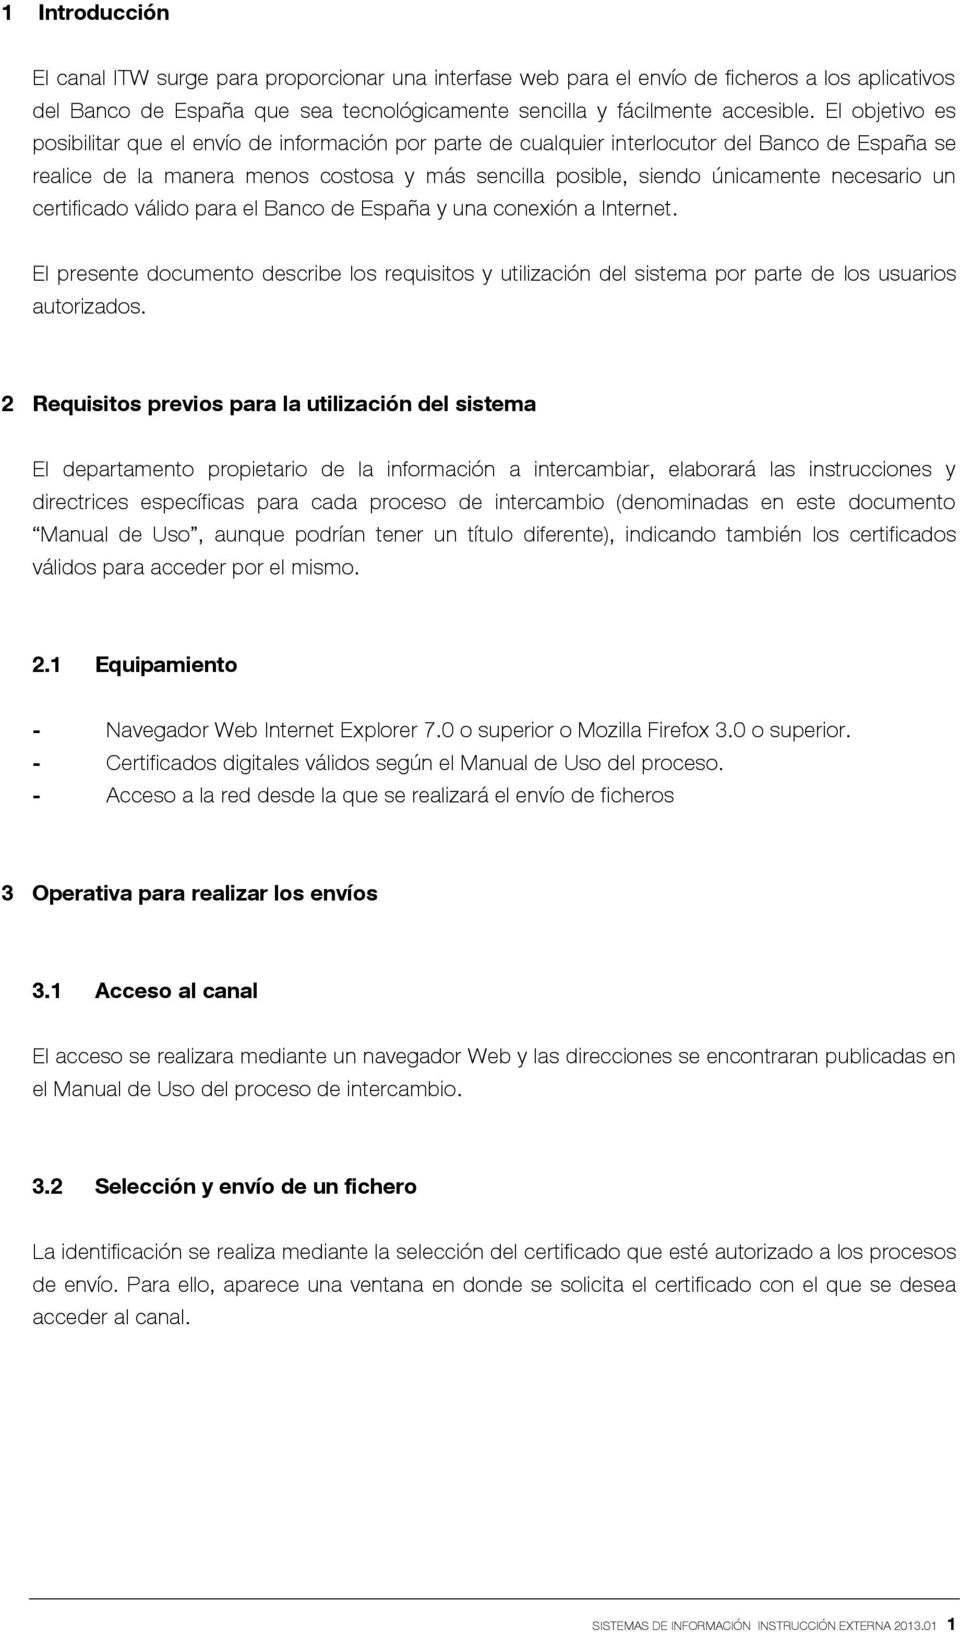 necesario un certificado válido para el Banco de España y una conexión a Internet. El presente documento describe los requisitos y utilización del sistema por parte de los usuarios autorizados.